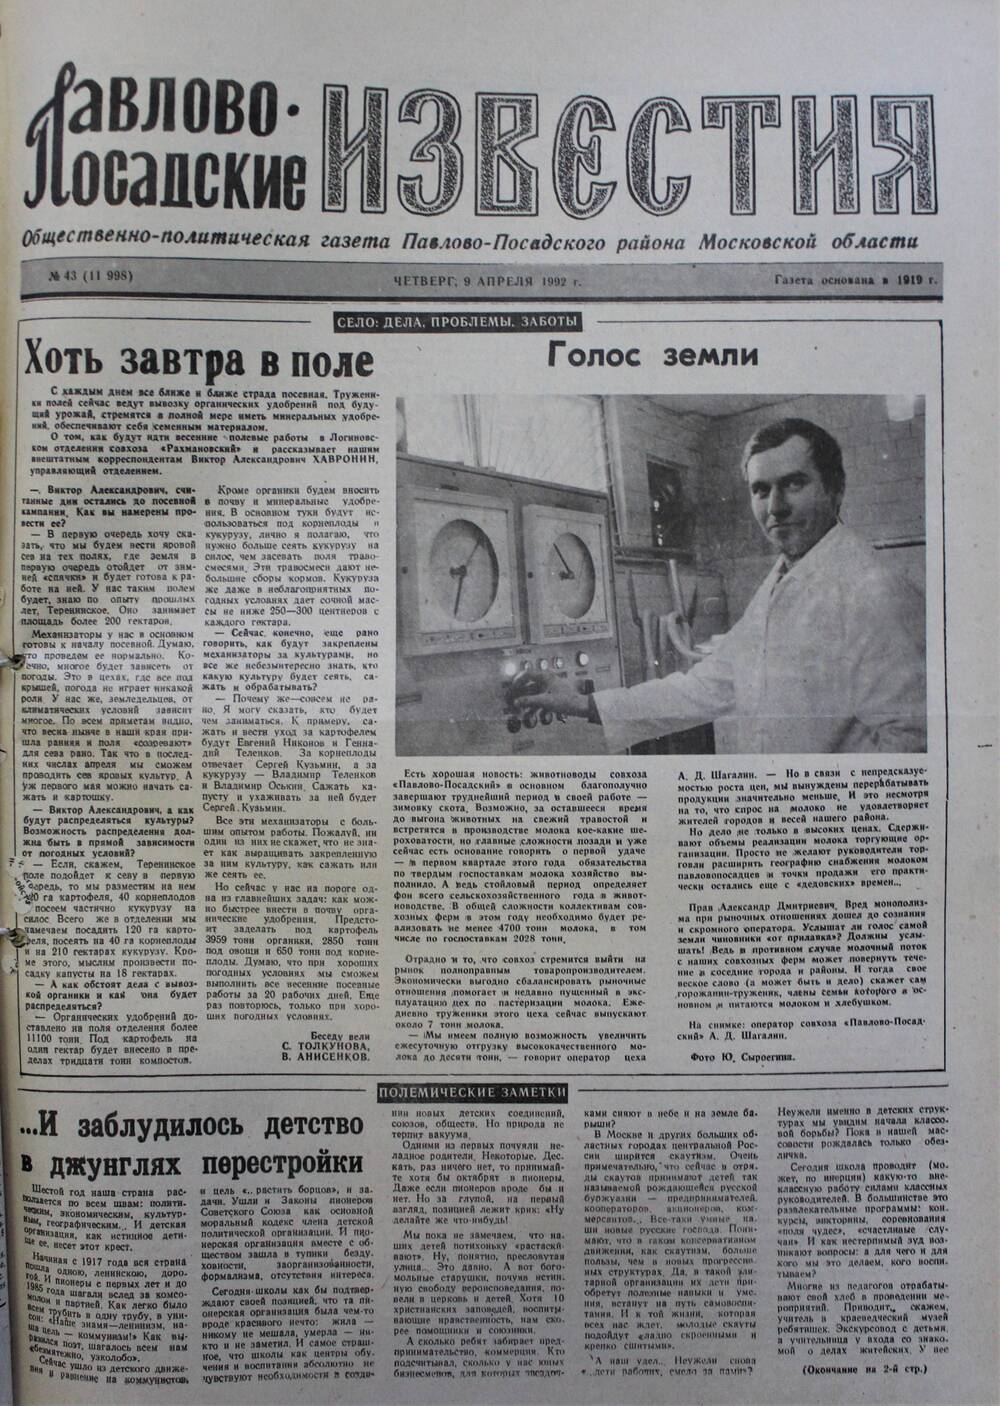 Газета Павлово-Посадские известия № 43 (11998)  от 9 апреля 1992 г.